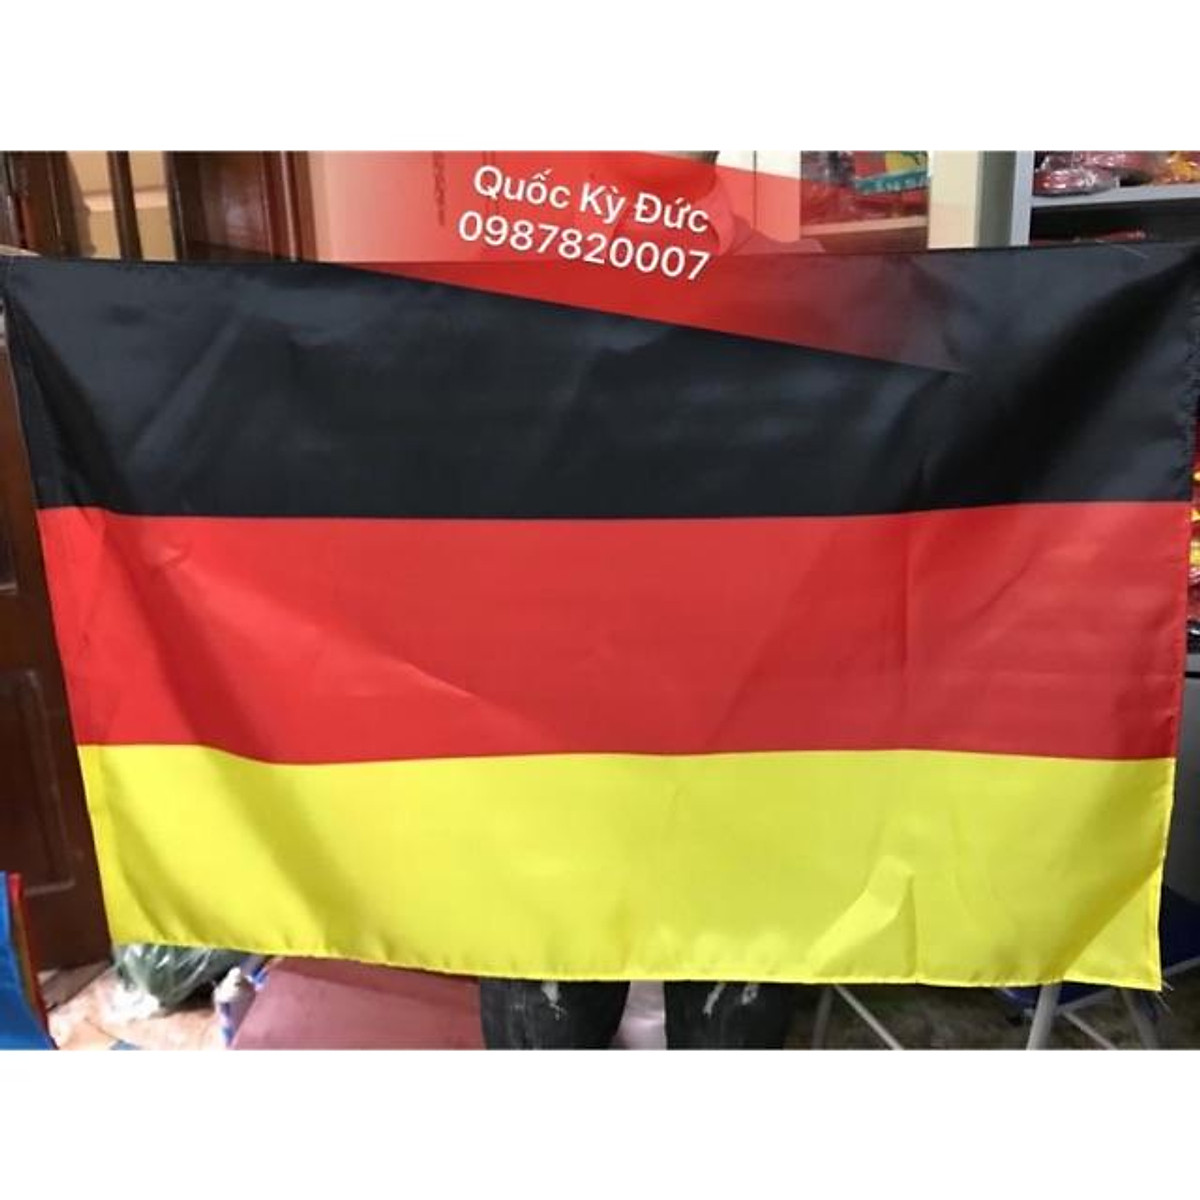 Hình ảnh rực rỡ của cờ quốc kỳ Đức sẽ khiến bạn không thể bỏ qua việc mua một chiếc cờ này làm kỷ niệm. Với chất lượng tuyệt vời và ý nghĩa sâu sắc, chiếc cờ quốc kỳ này sẽ là món quà ý nghĩa để tặng cho gia đình và bạn bè của bạn.